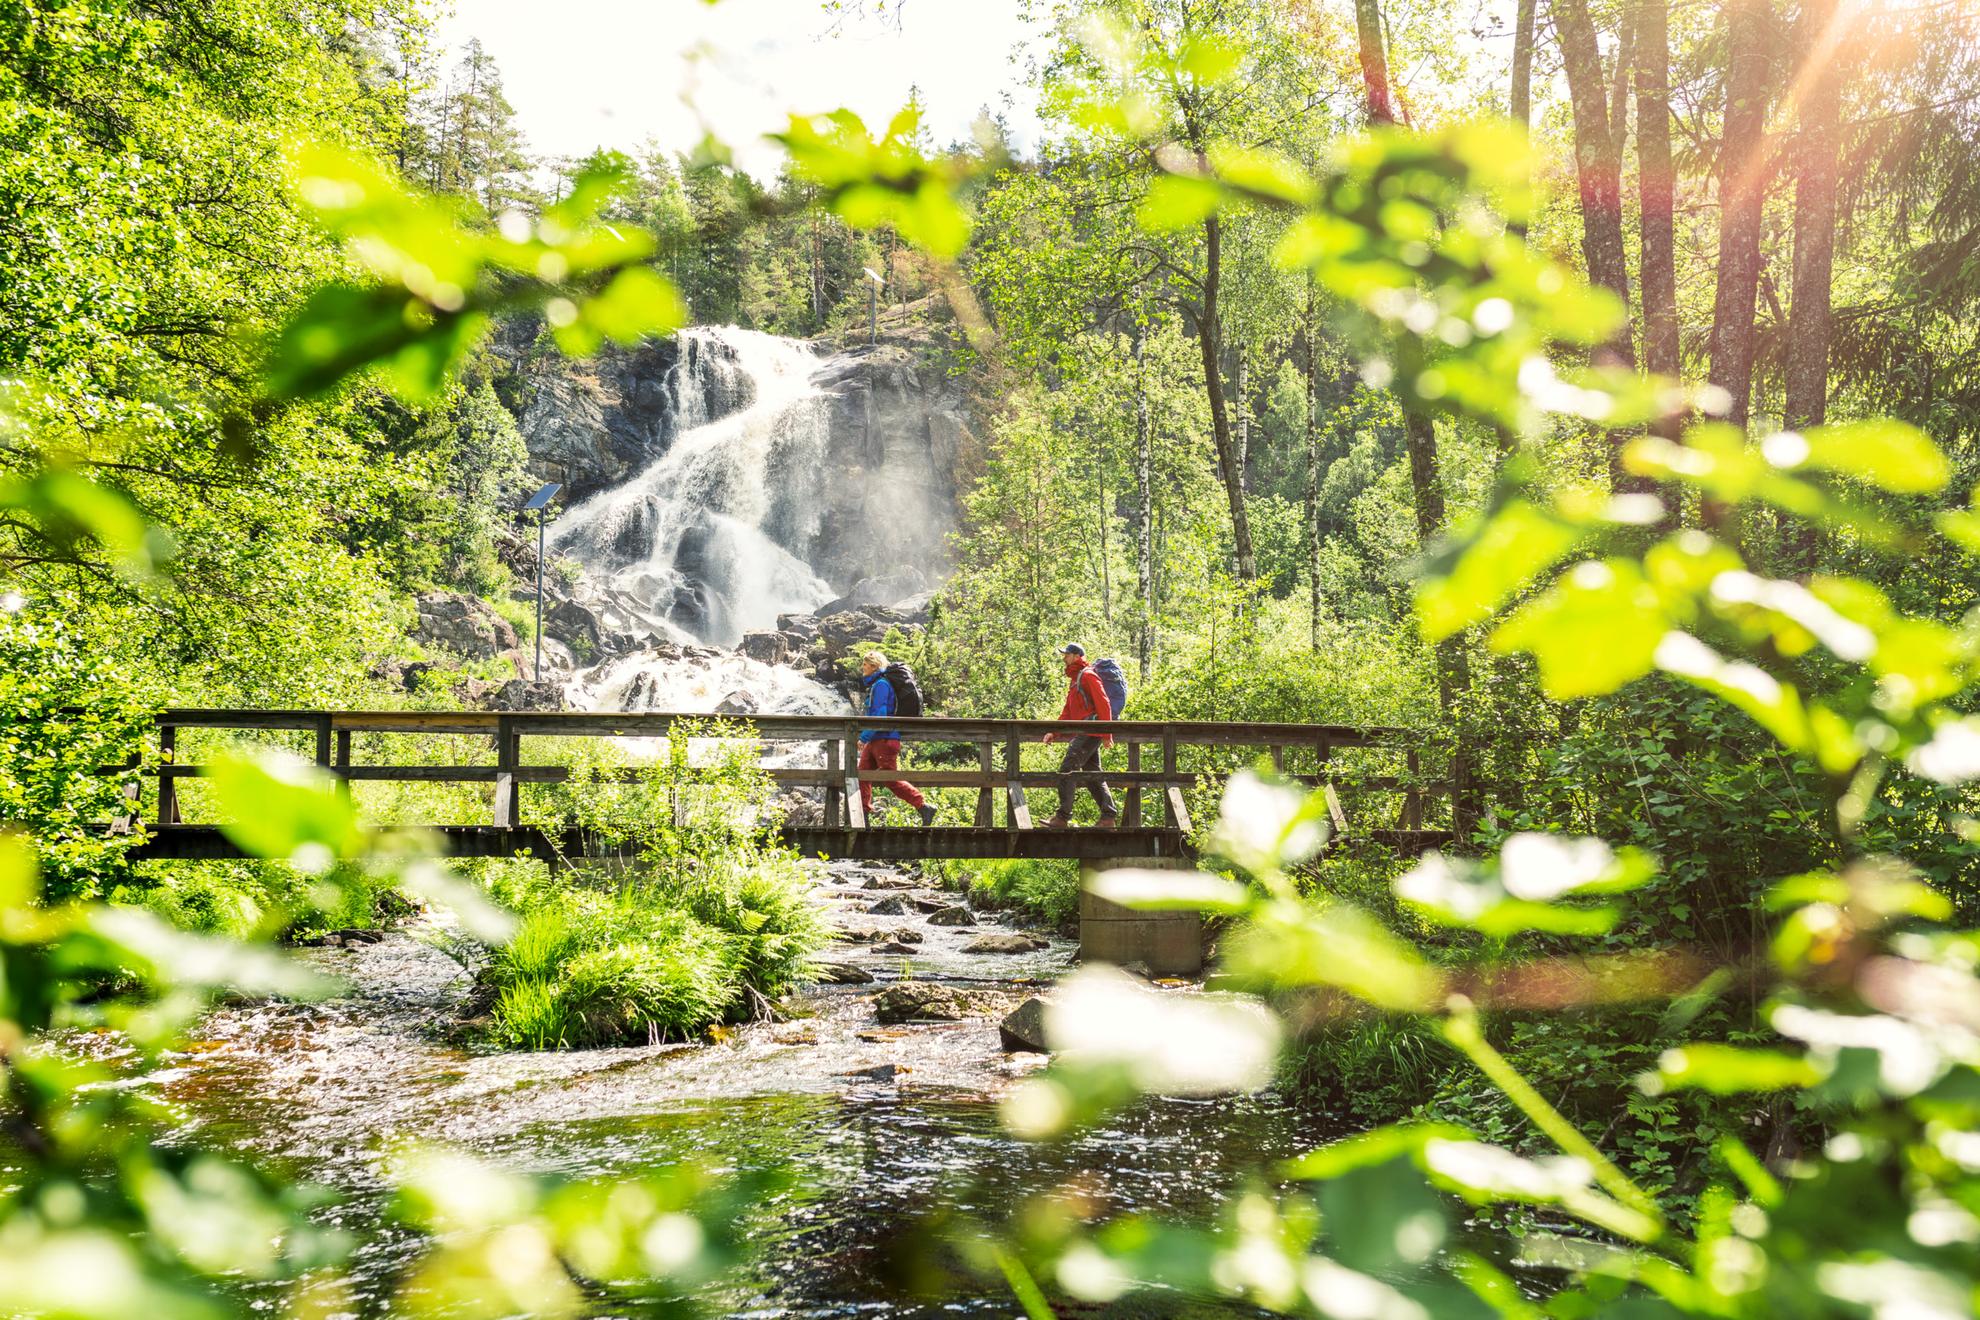 Deux personnes marchent sur un pont en bois dans une forêt. Une chute d'eau se trouve à l'arrière-plan.